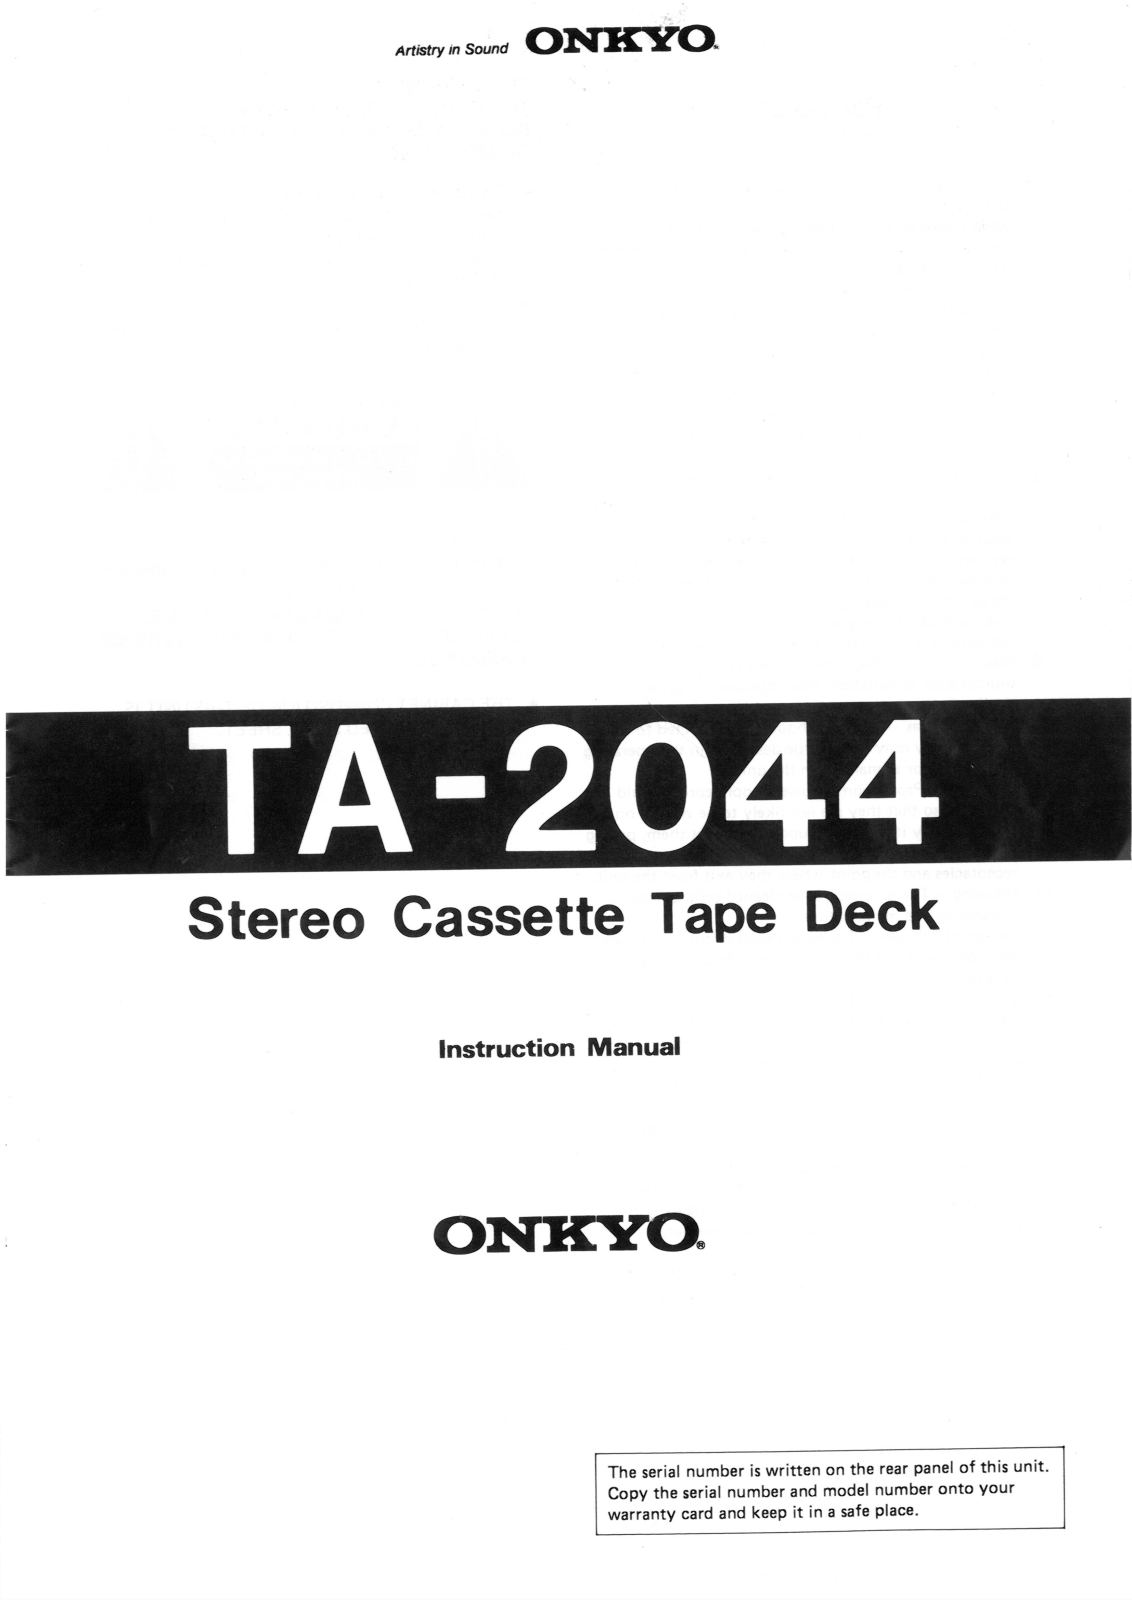 Onkyo TA-2044 Instruction Manual